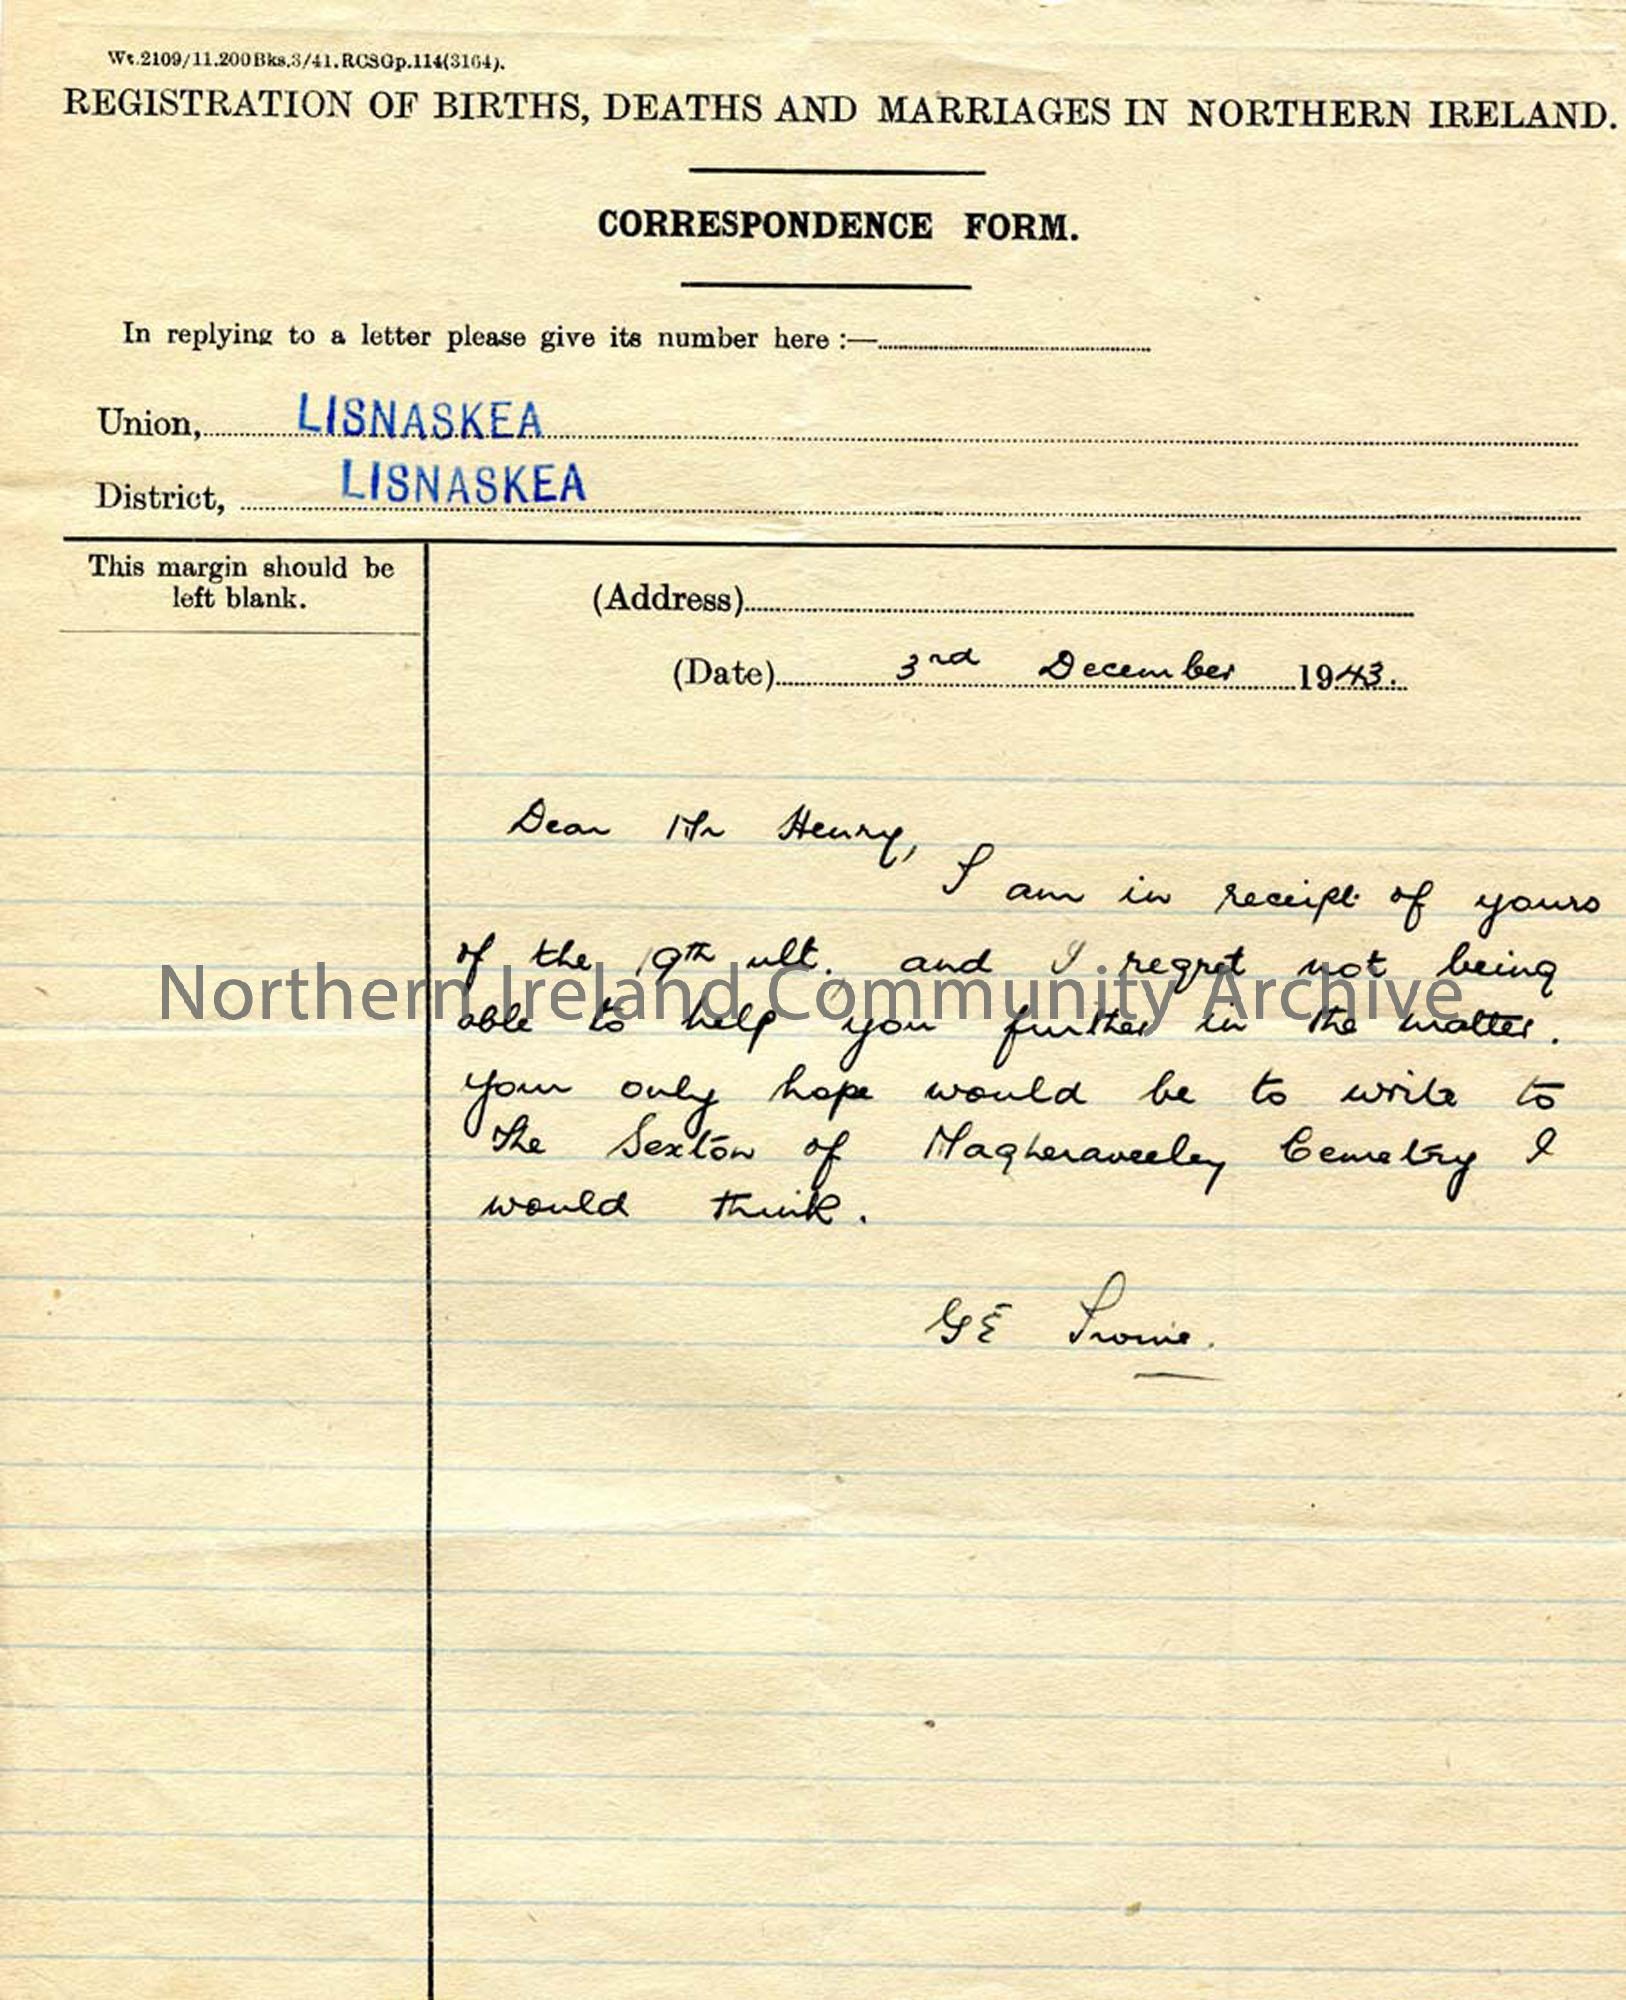 Letter from G E Irvine 3.12.1943